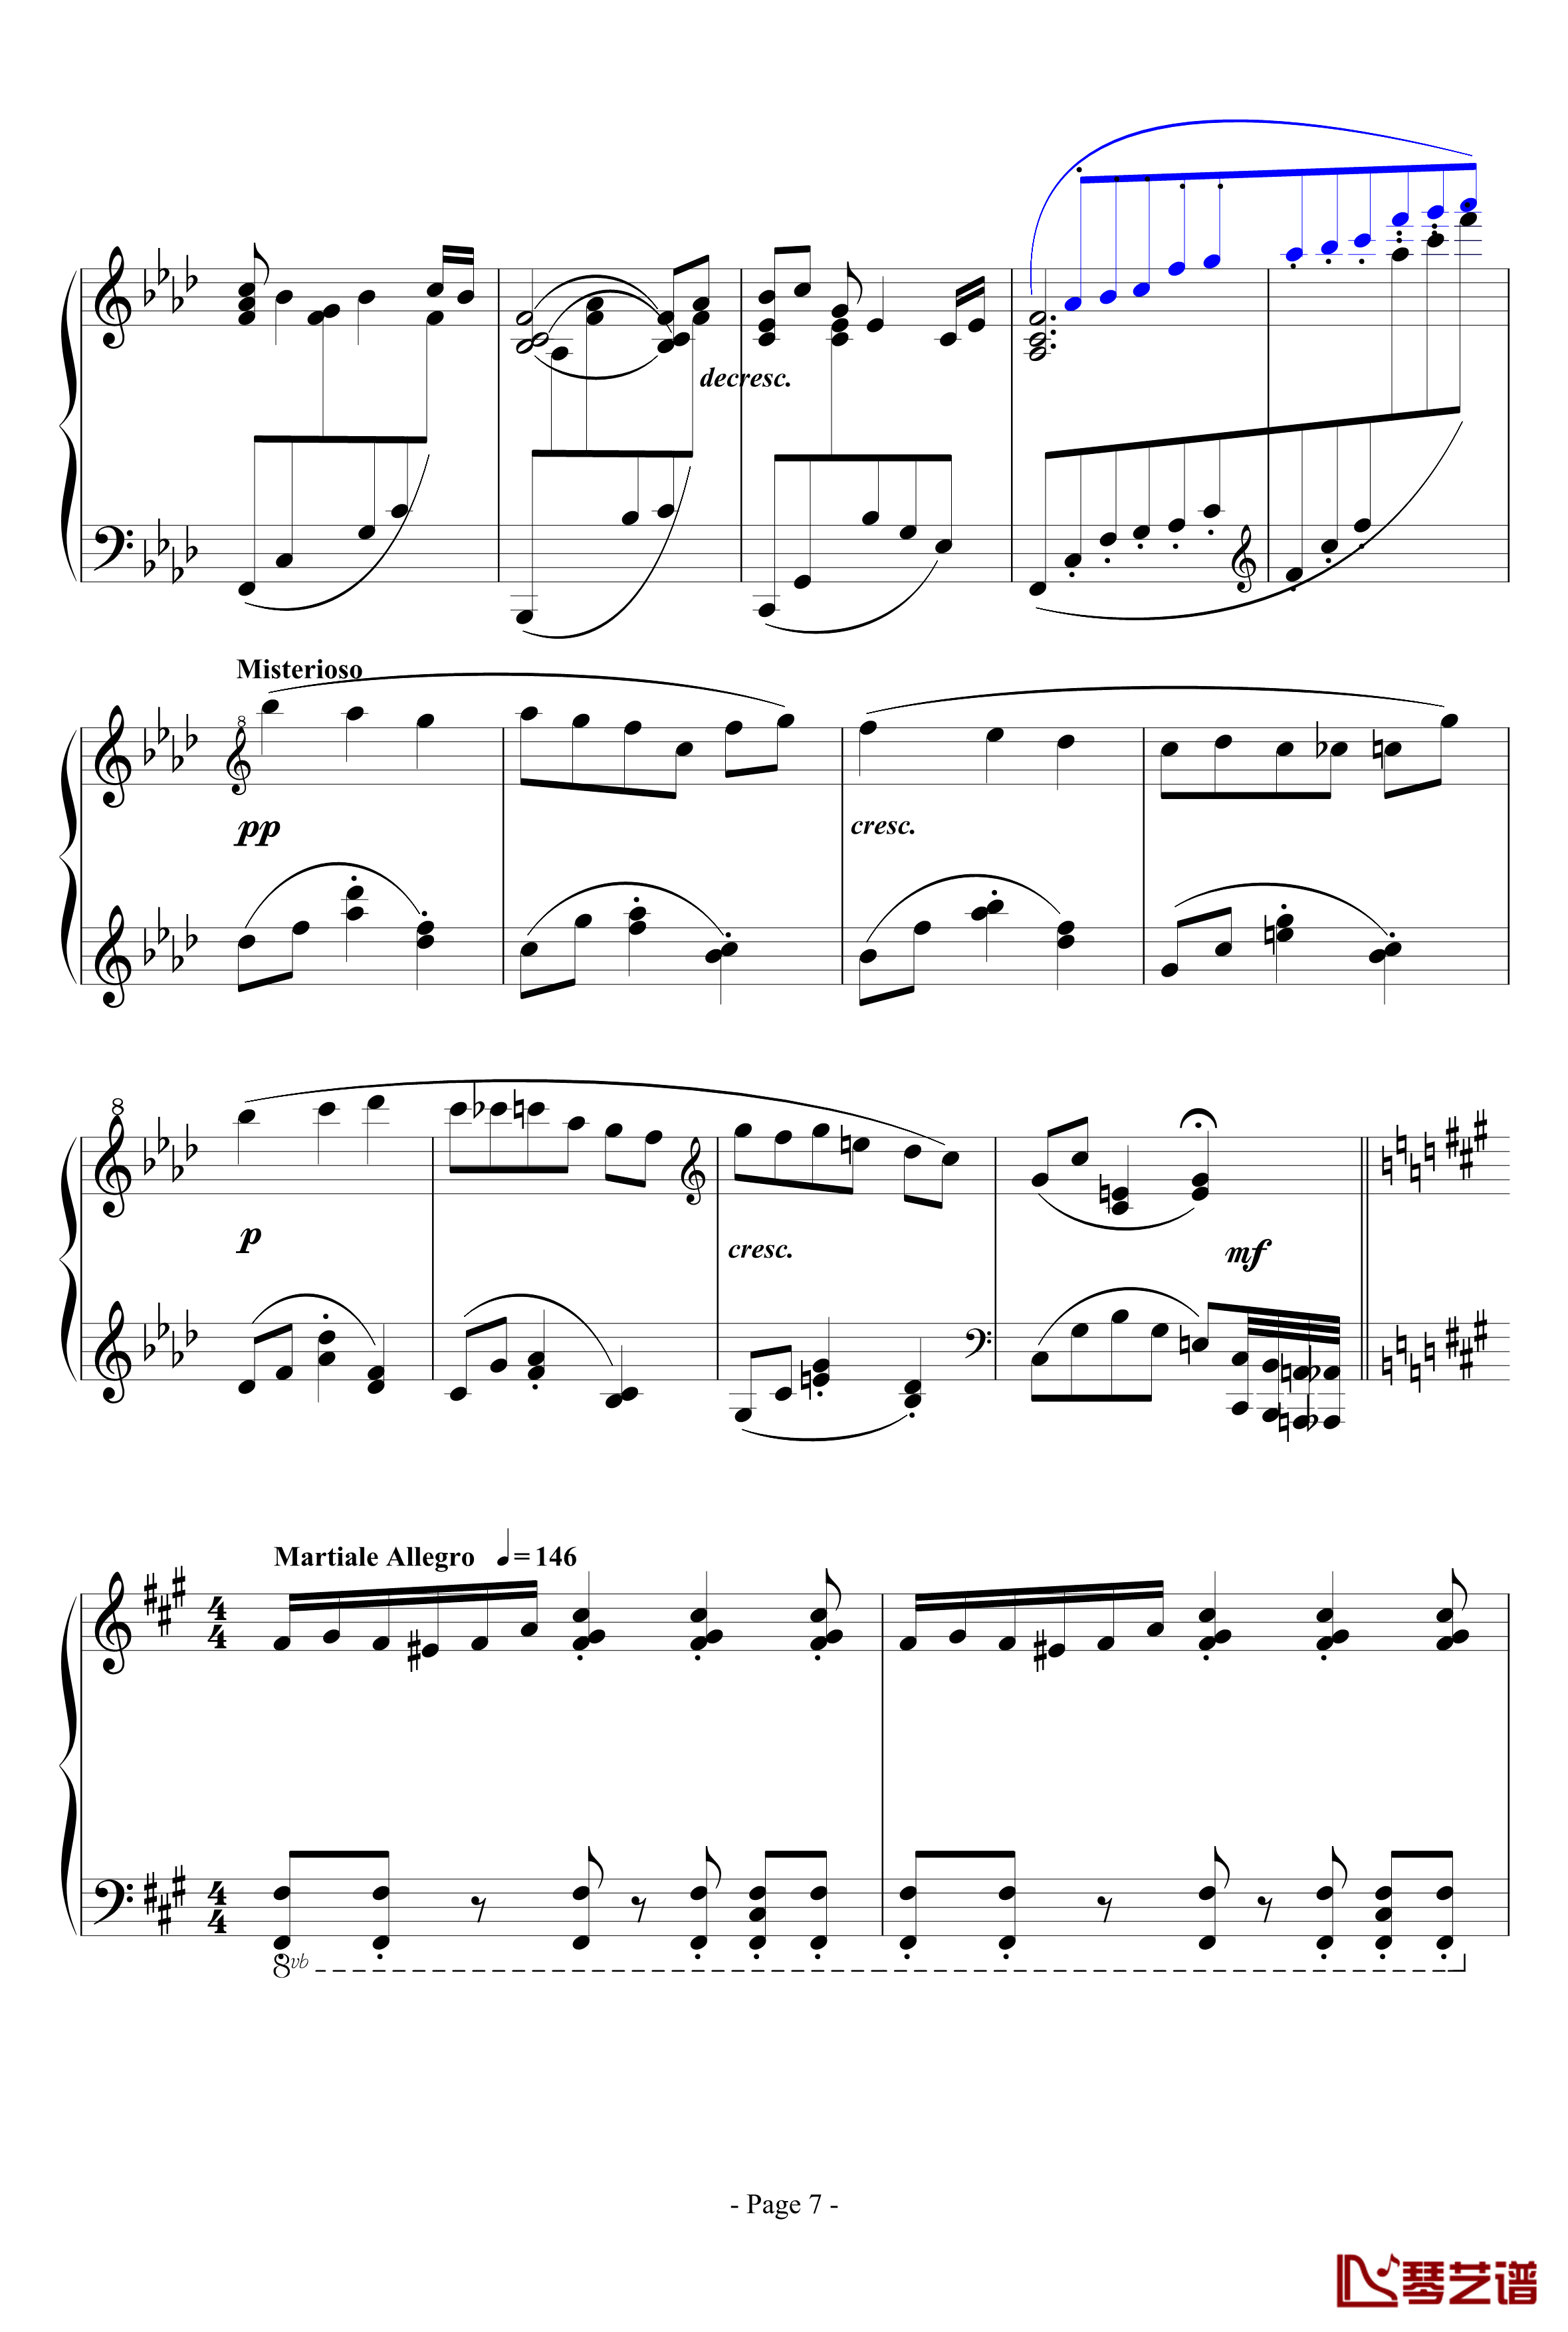 思绪之舞钢琴谱-lujianxiang5557